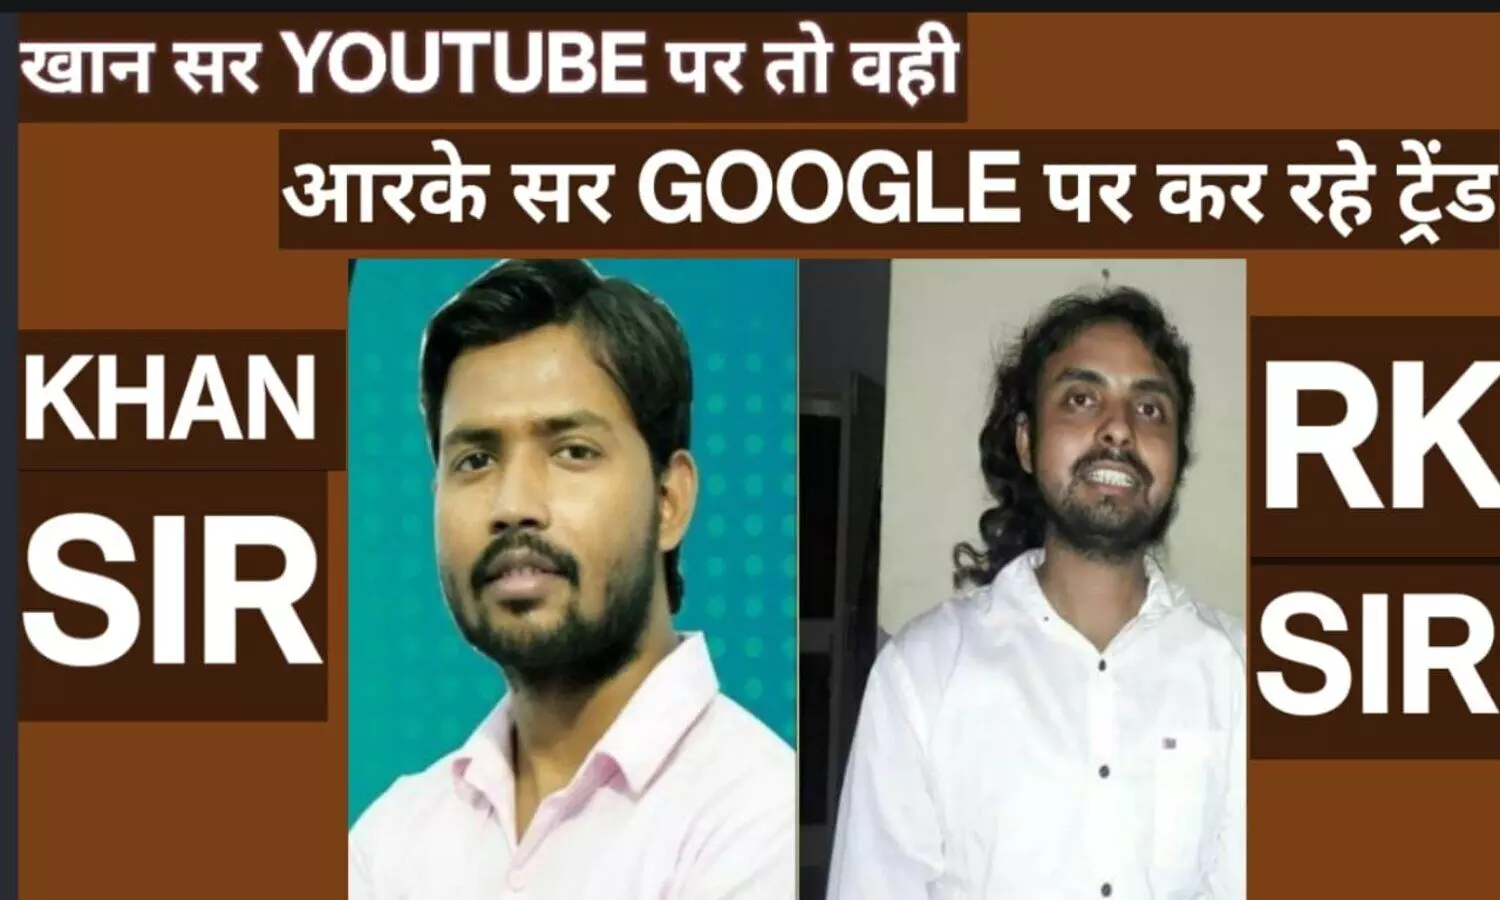 Bihar News: खान सर यूट्यूब पर तो वहीं आरके श्रीवास्तव गूगल पर कर रहे ट्रेंड, जानें वजह